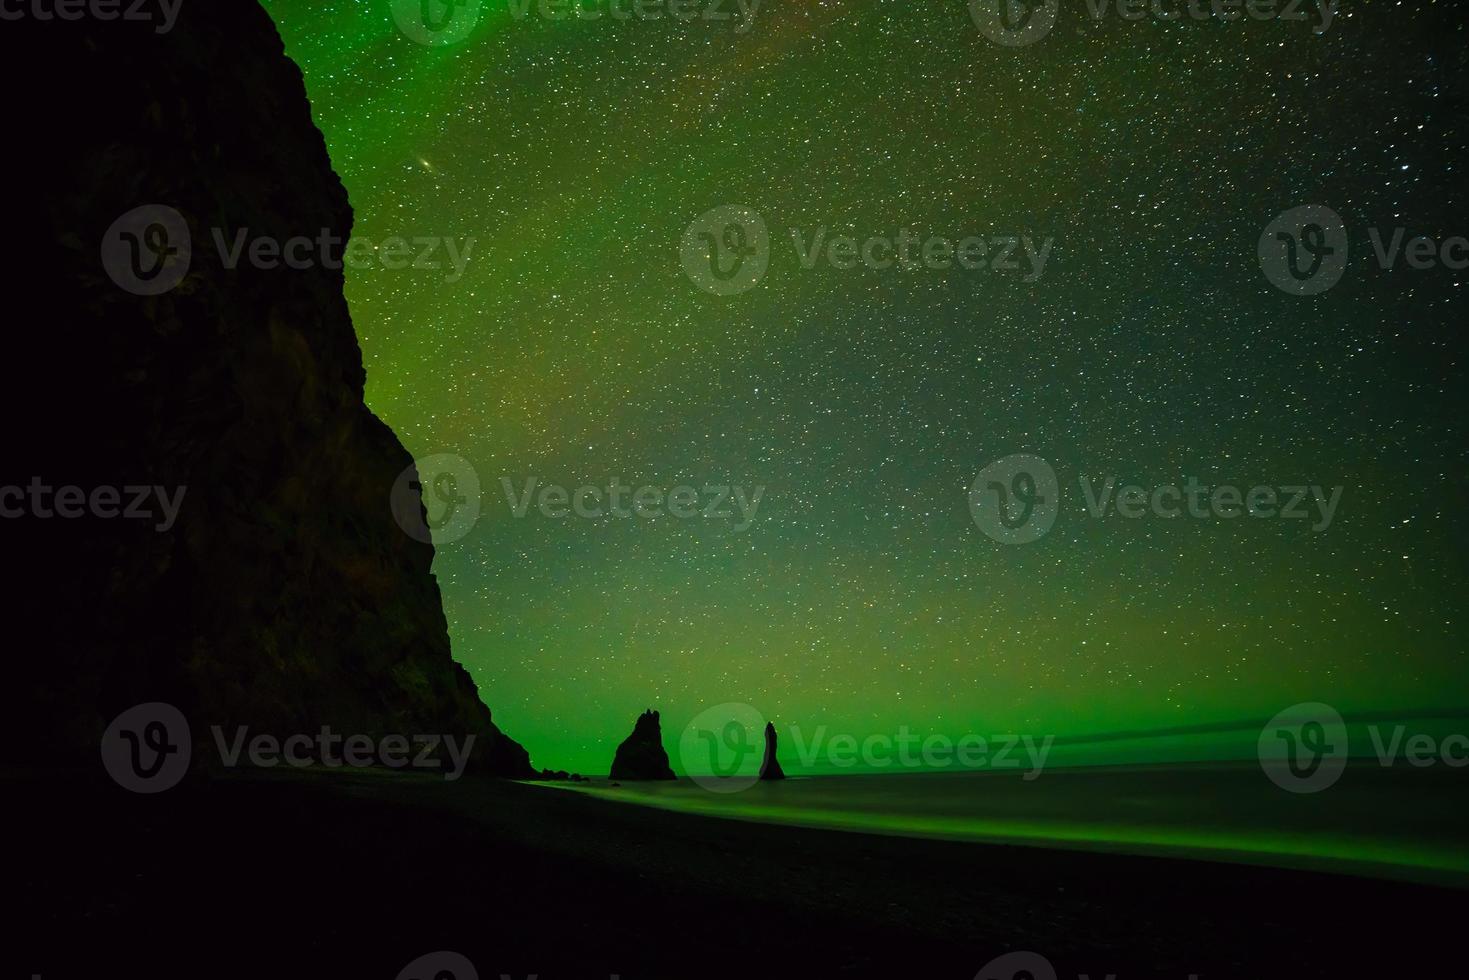 aurora boreale sopra la spiaggia di sabbia nera a vik foto